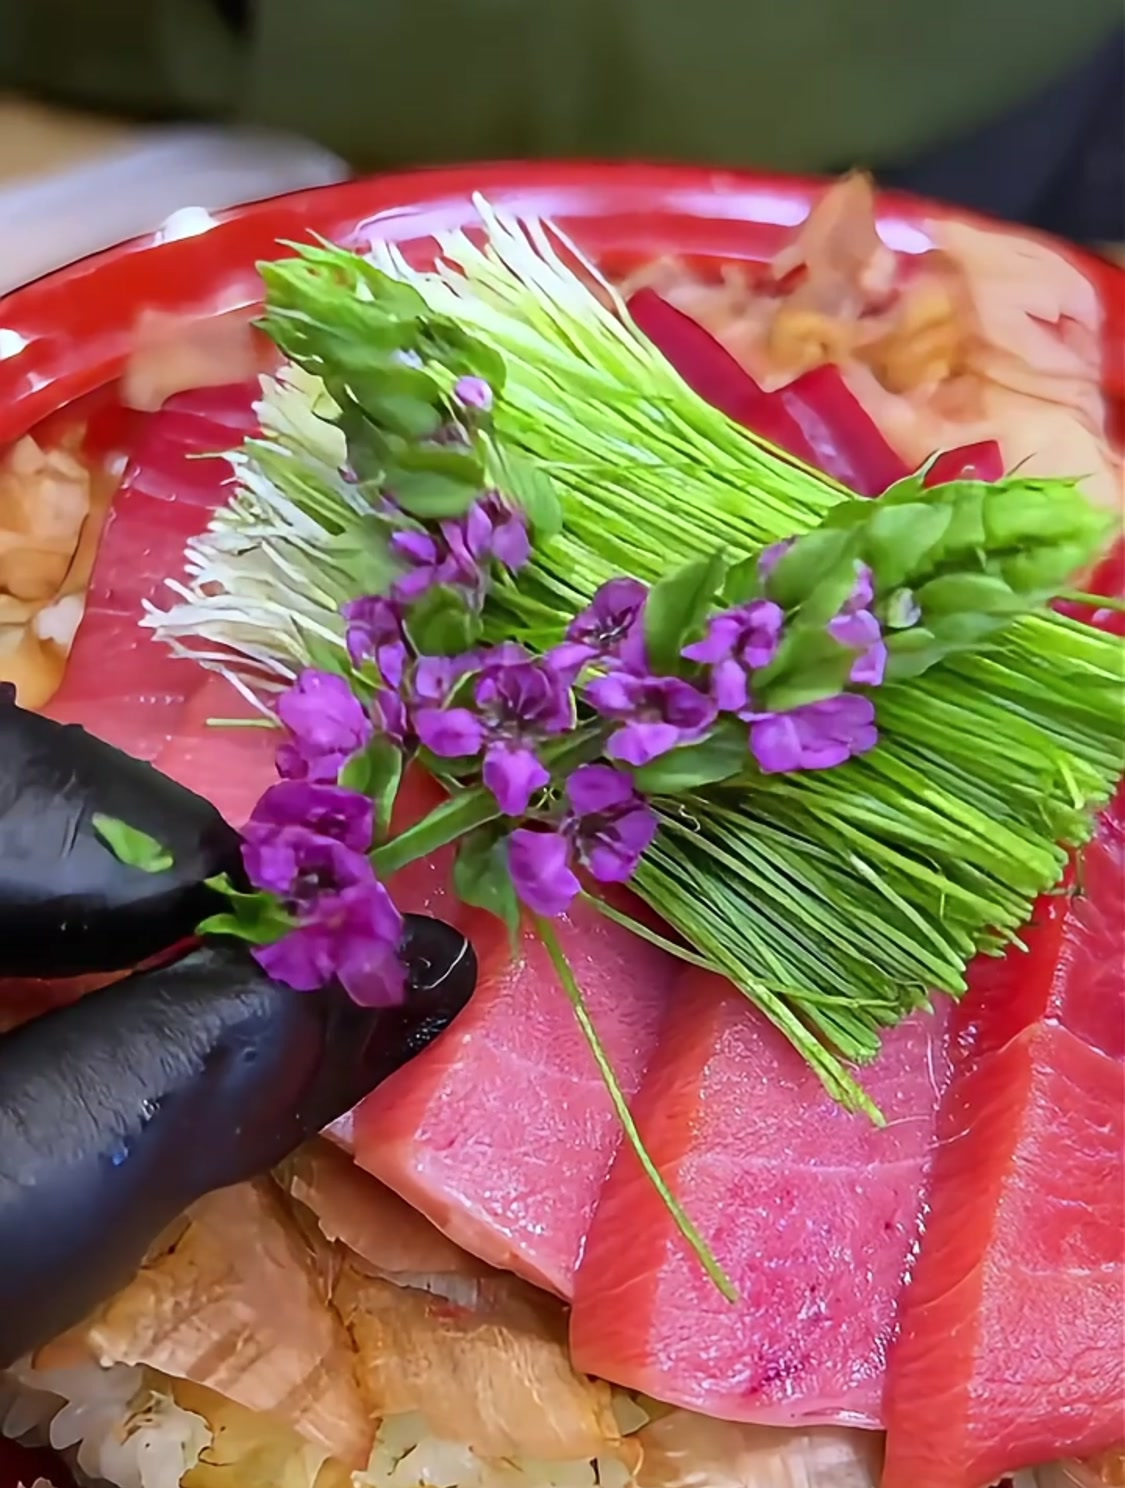 走进厨房:金枪鱼木鱼花山葵盖饭的完美制作秘籍